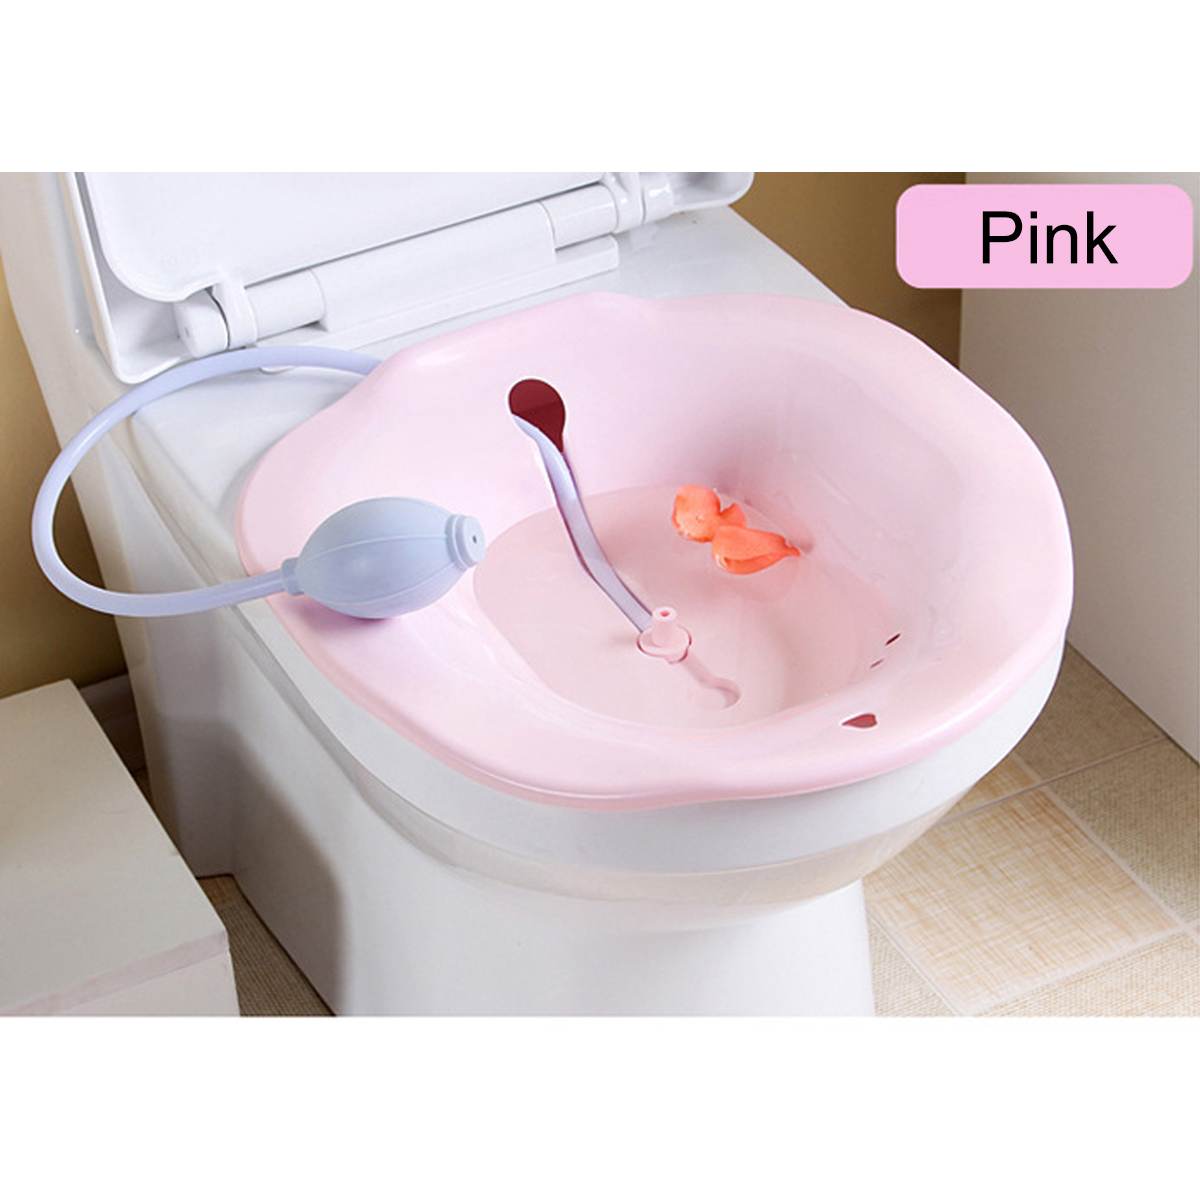 Bærbar 2.5l bidet sitz badekar babysygeplejeboks kit postpartum hæmorroide vaskesprøjte på toilet: Lyserød